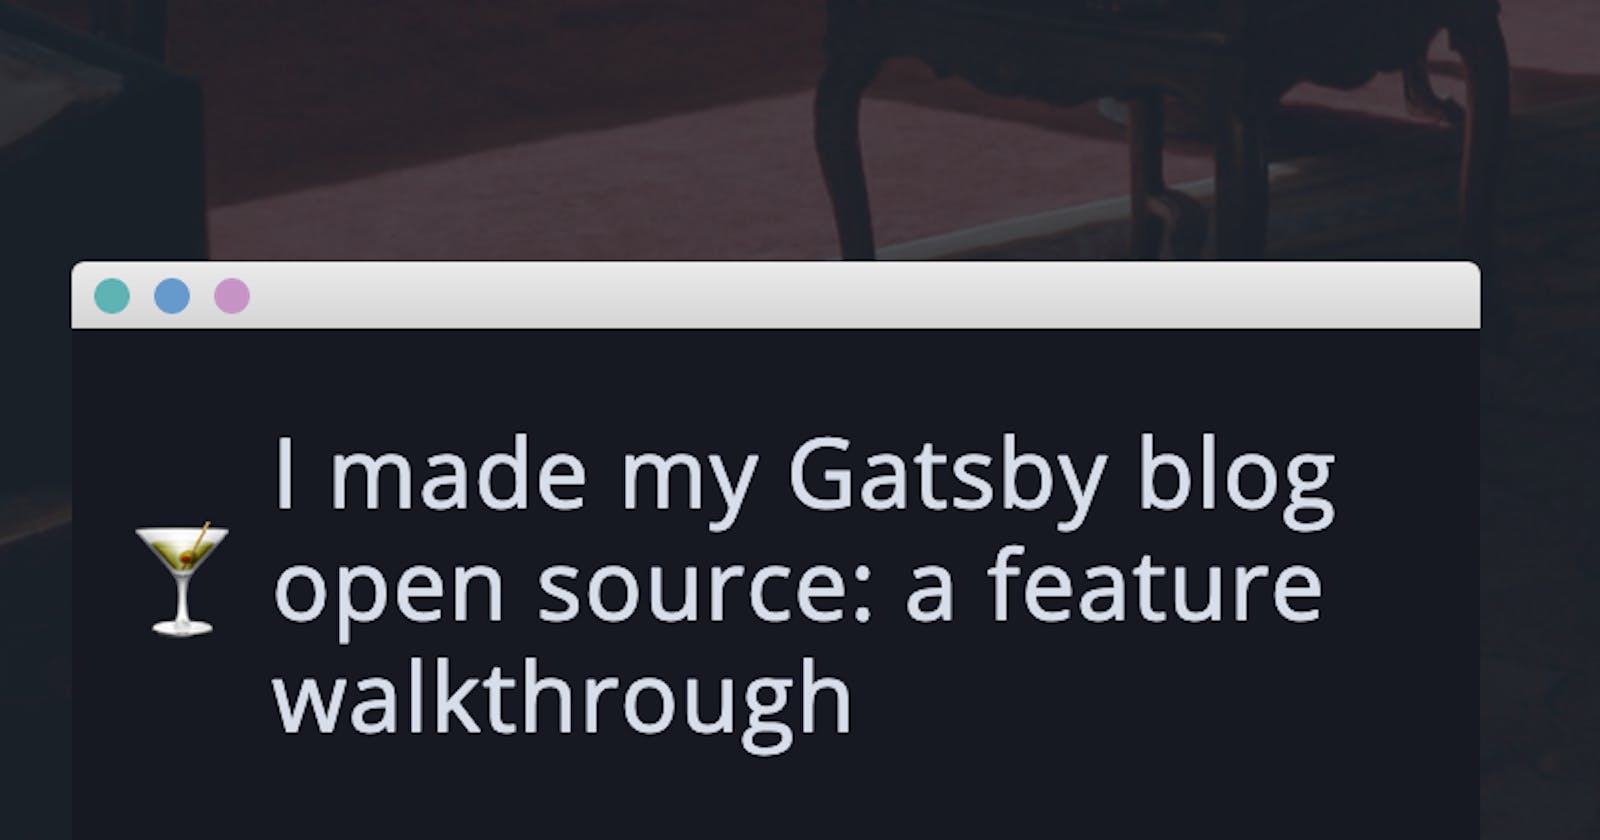 I made my Gatsby blog open source: a feature walkthrough